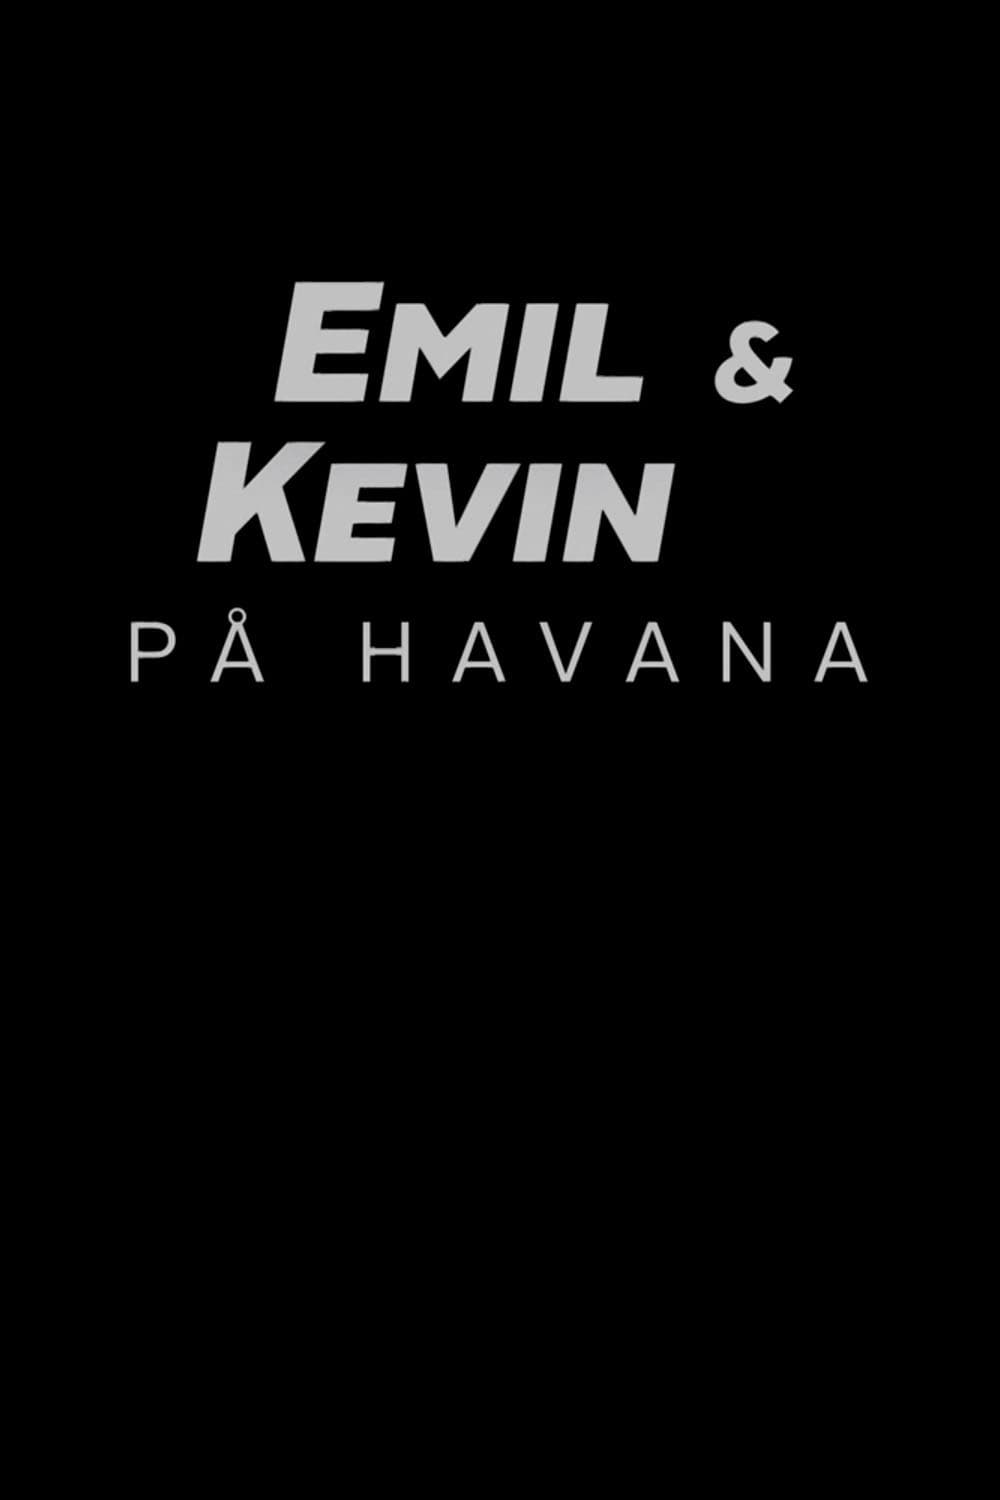 Emil & Kevin on Havana